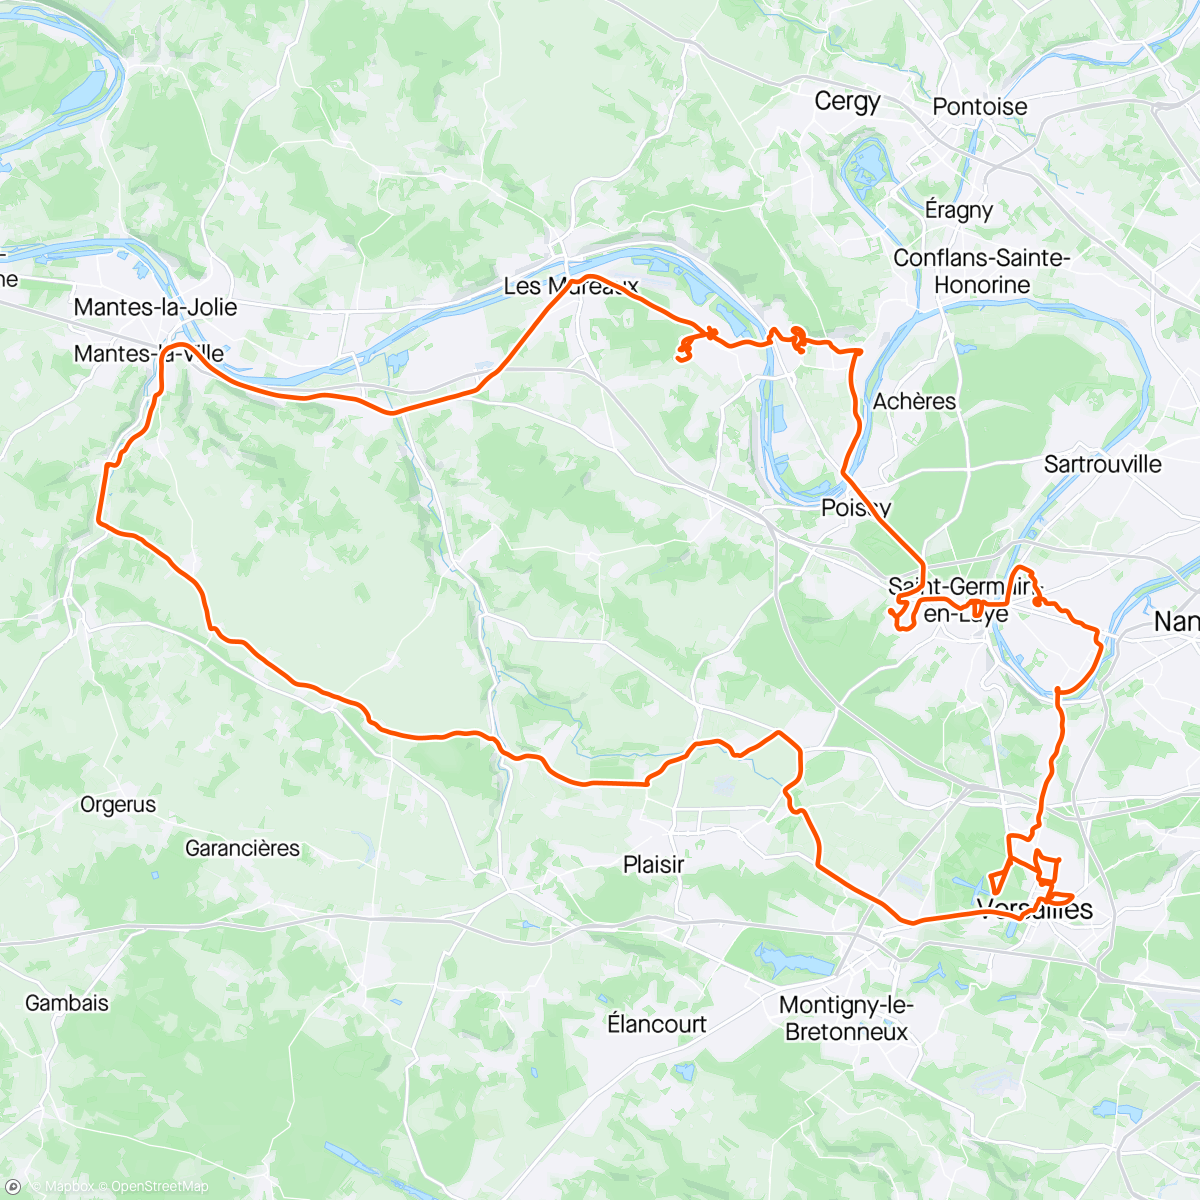 「🚴🏻‍♂️ Cyclotourisme & Pélerinage 👨‍🎓」活動的地圖